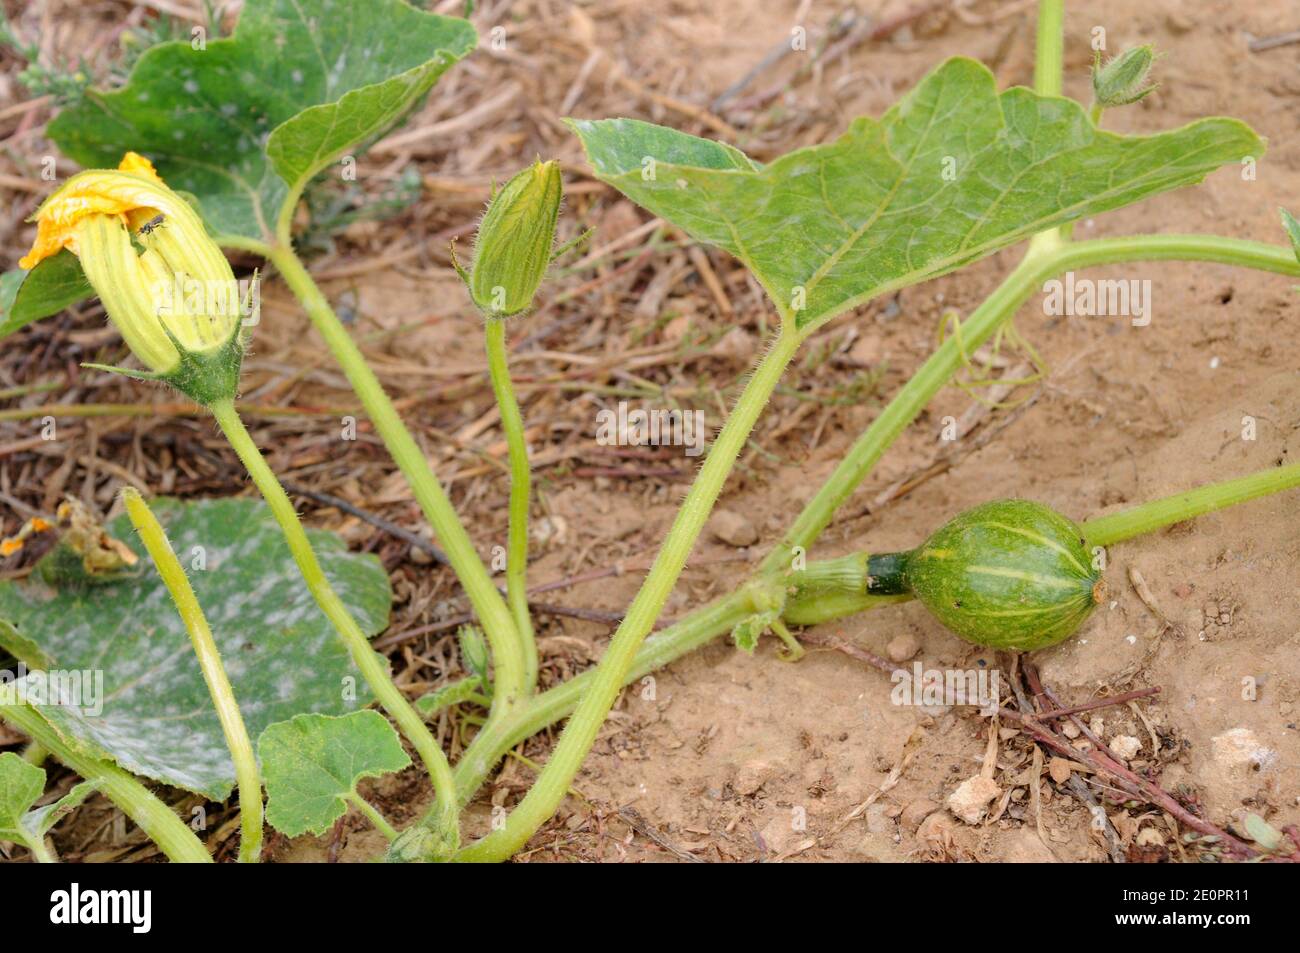 La calabaza (Cucurbita maxima) es una planta postrera anual nativa de Sudáfrica pero ampliamente cultivada por sus frutos comestibles. Flor y fruta joven Foto de stock